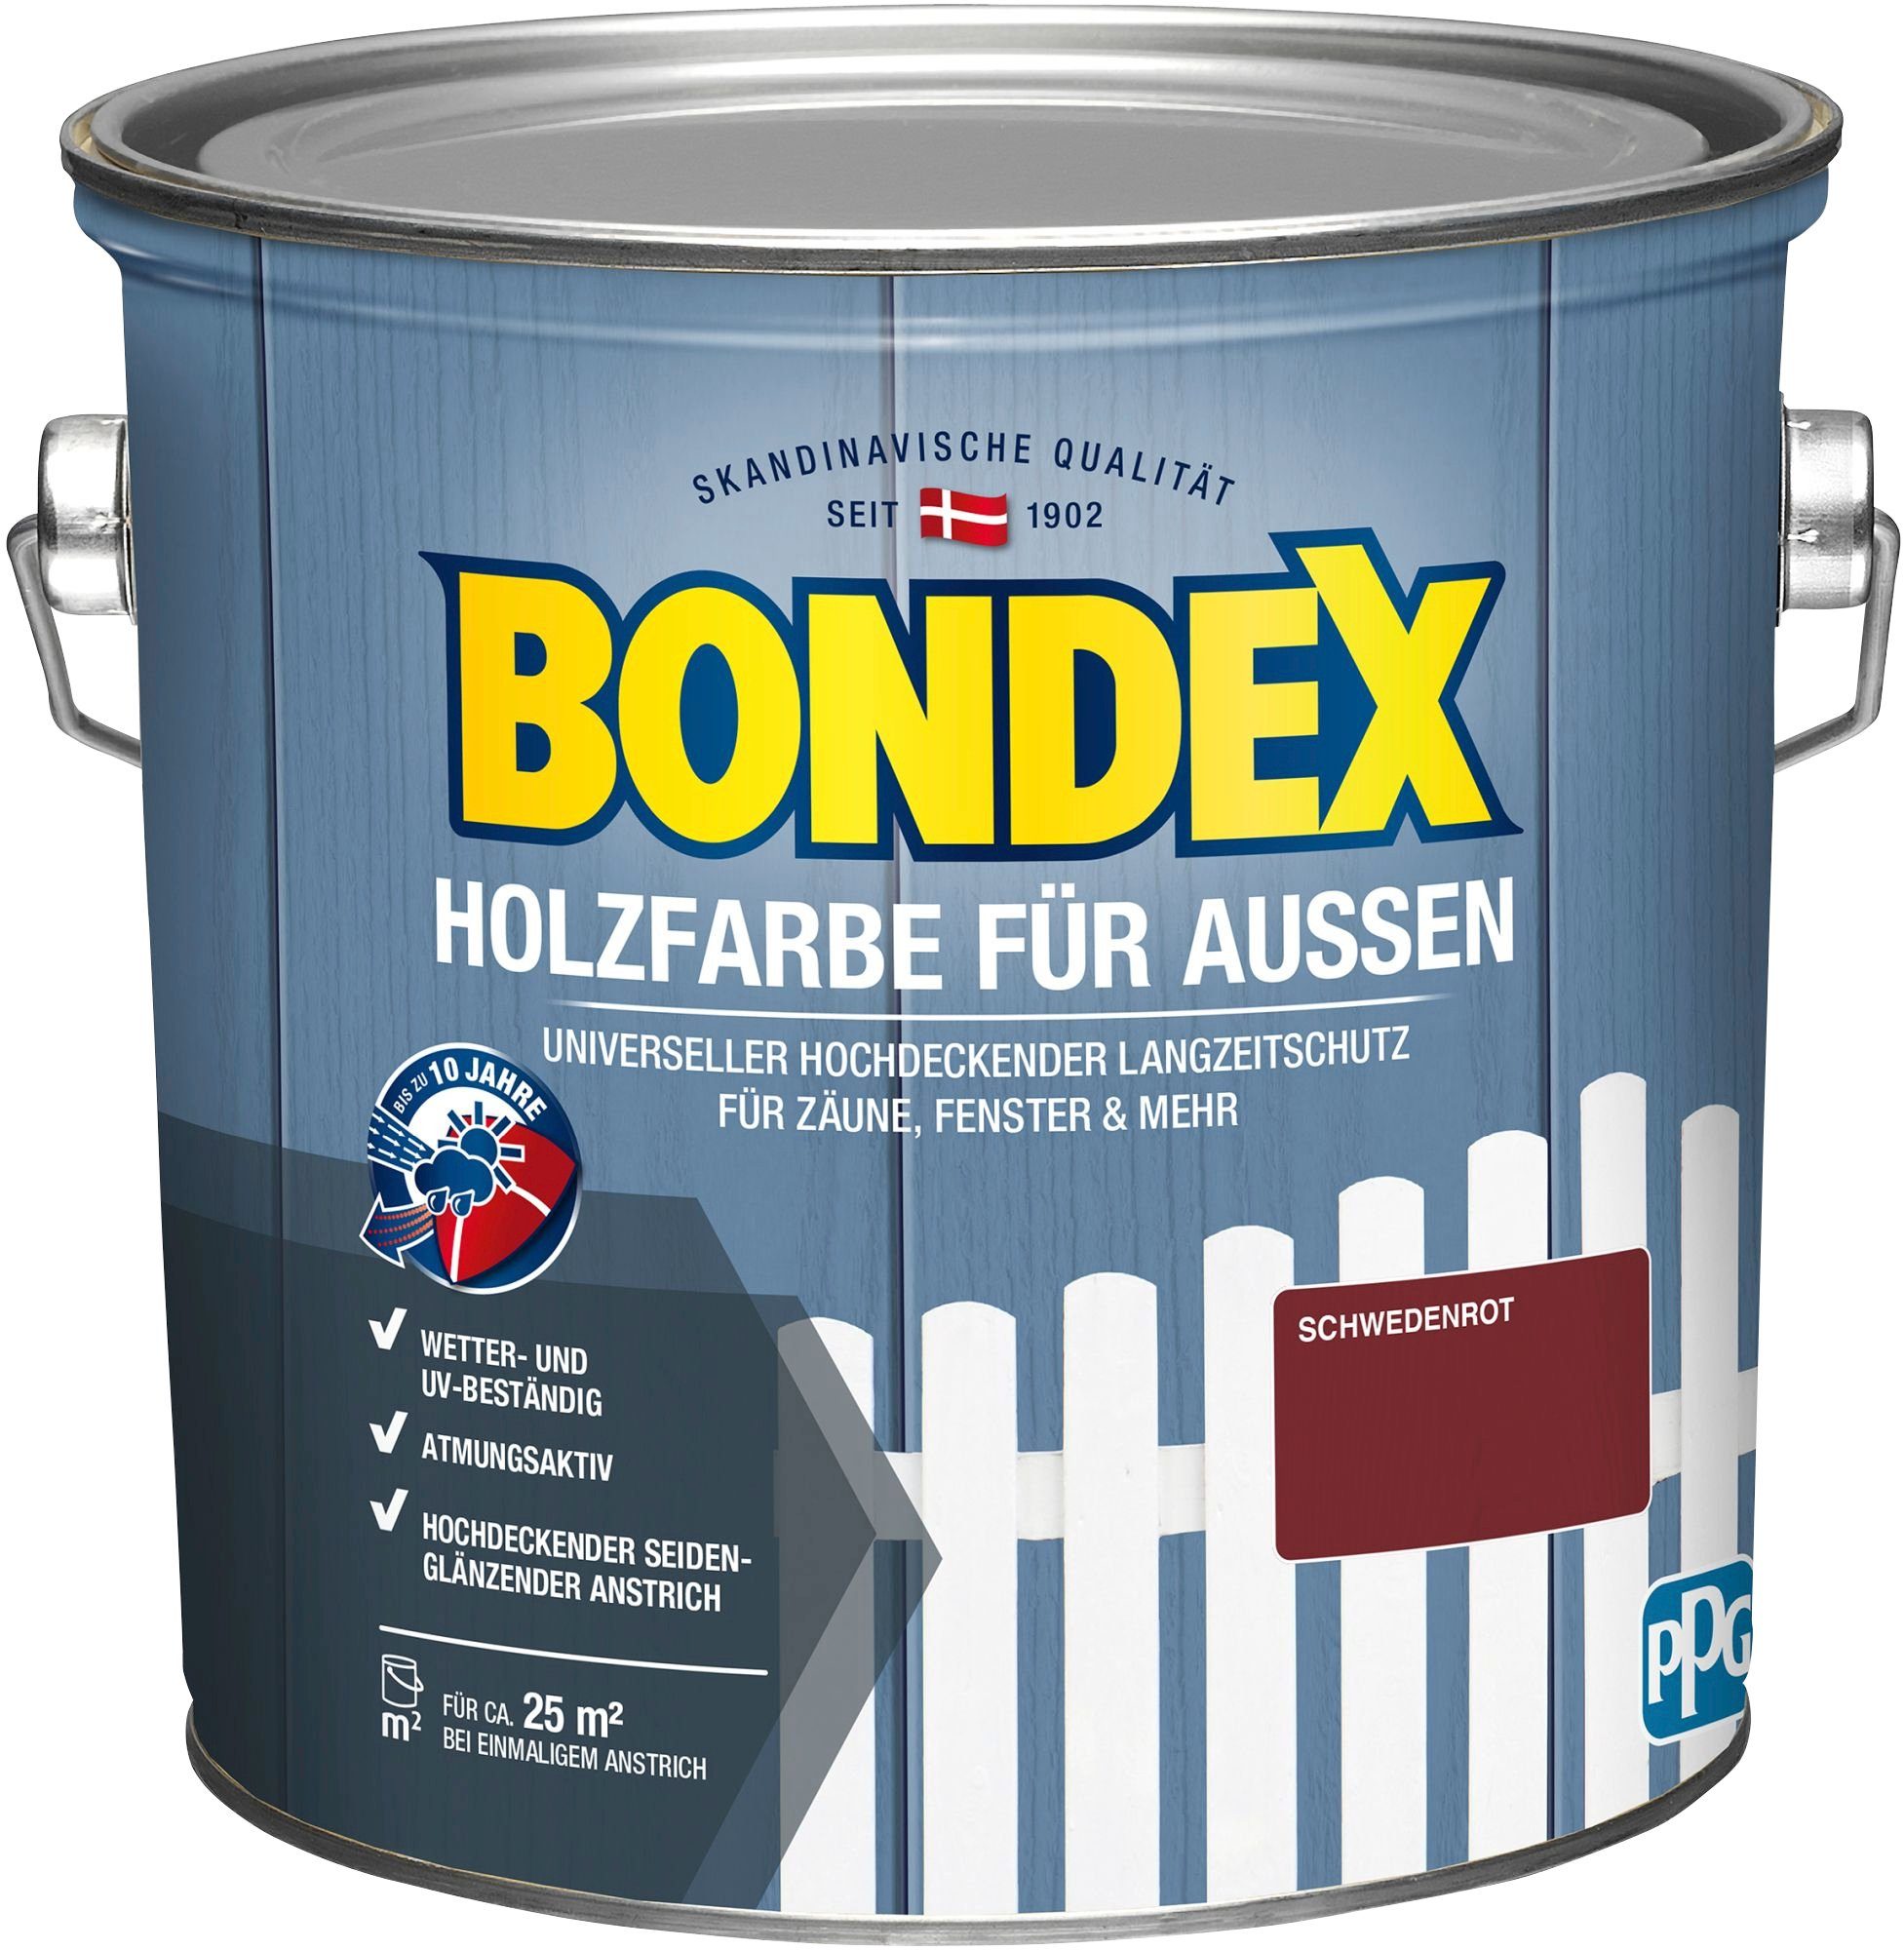 Bondex Wetterschutzfarbe HOLZFARBE FÜR AUSSEN, universeller hochdeckender Langzeit-Wetterschutz für Zäune & Fenster schwedenrot